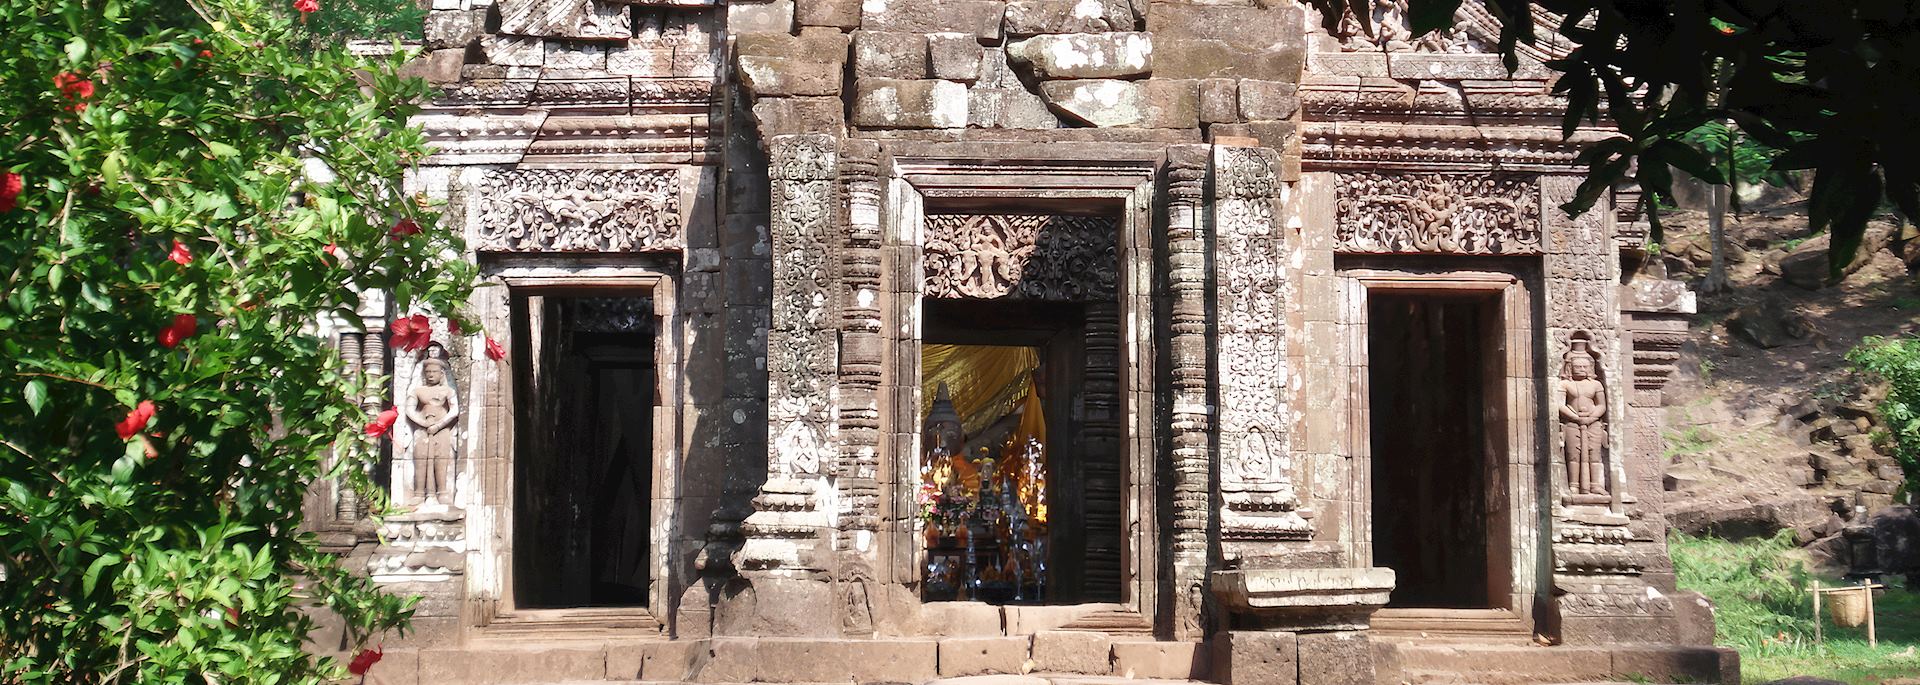 Wat Phou Temple, Champasak, Laos